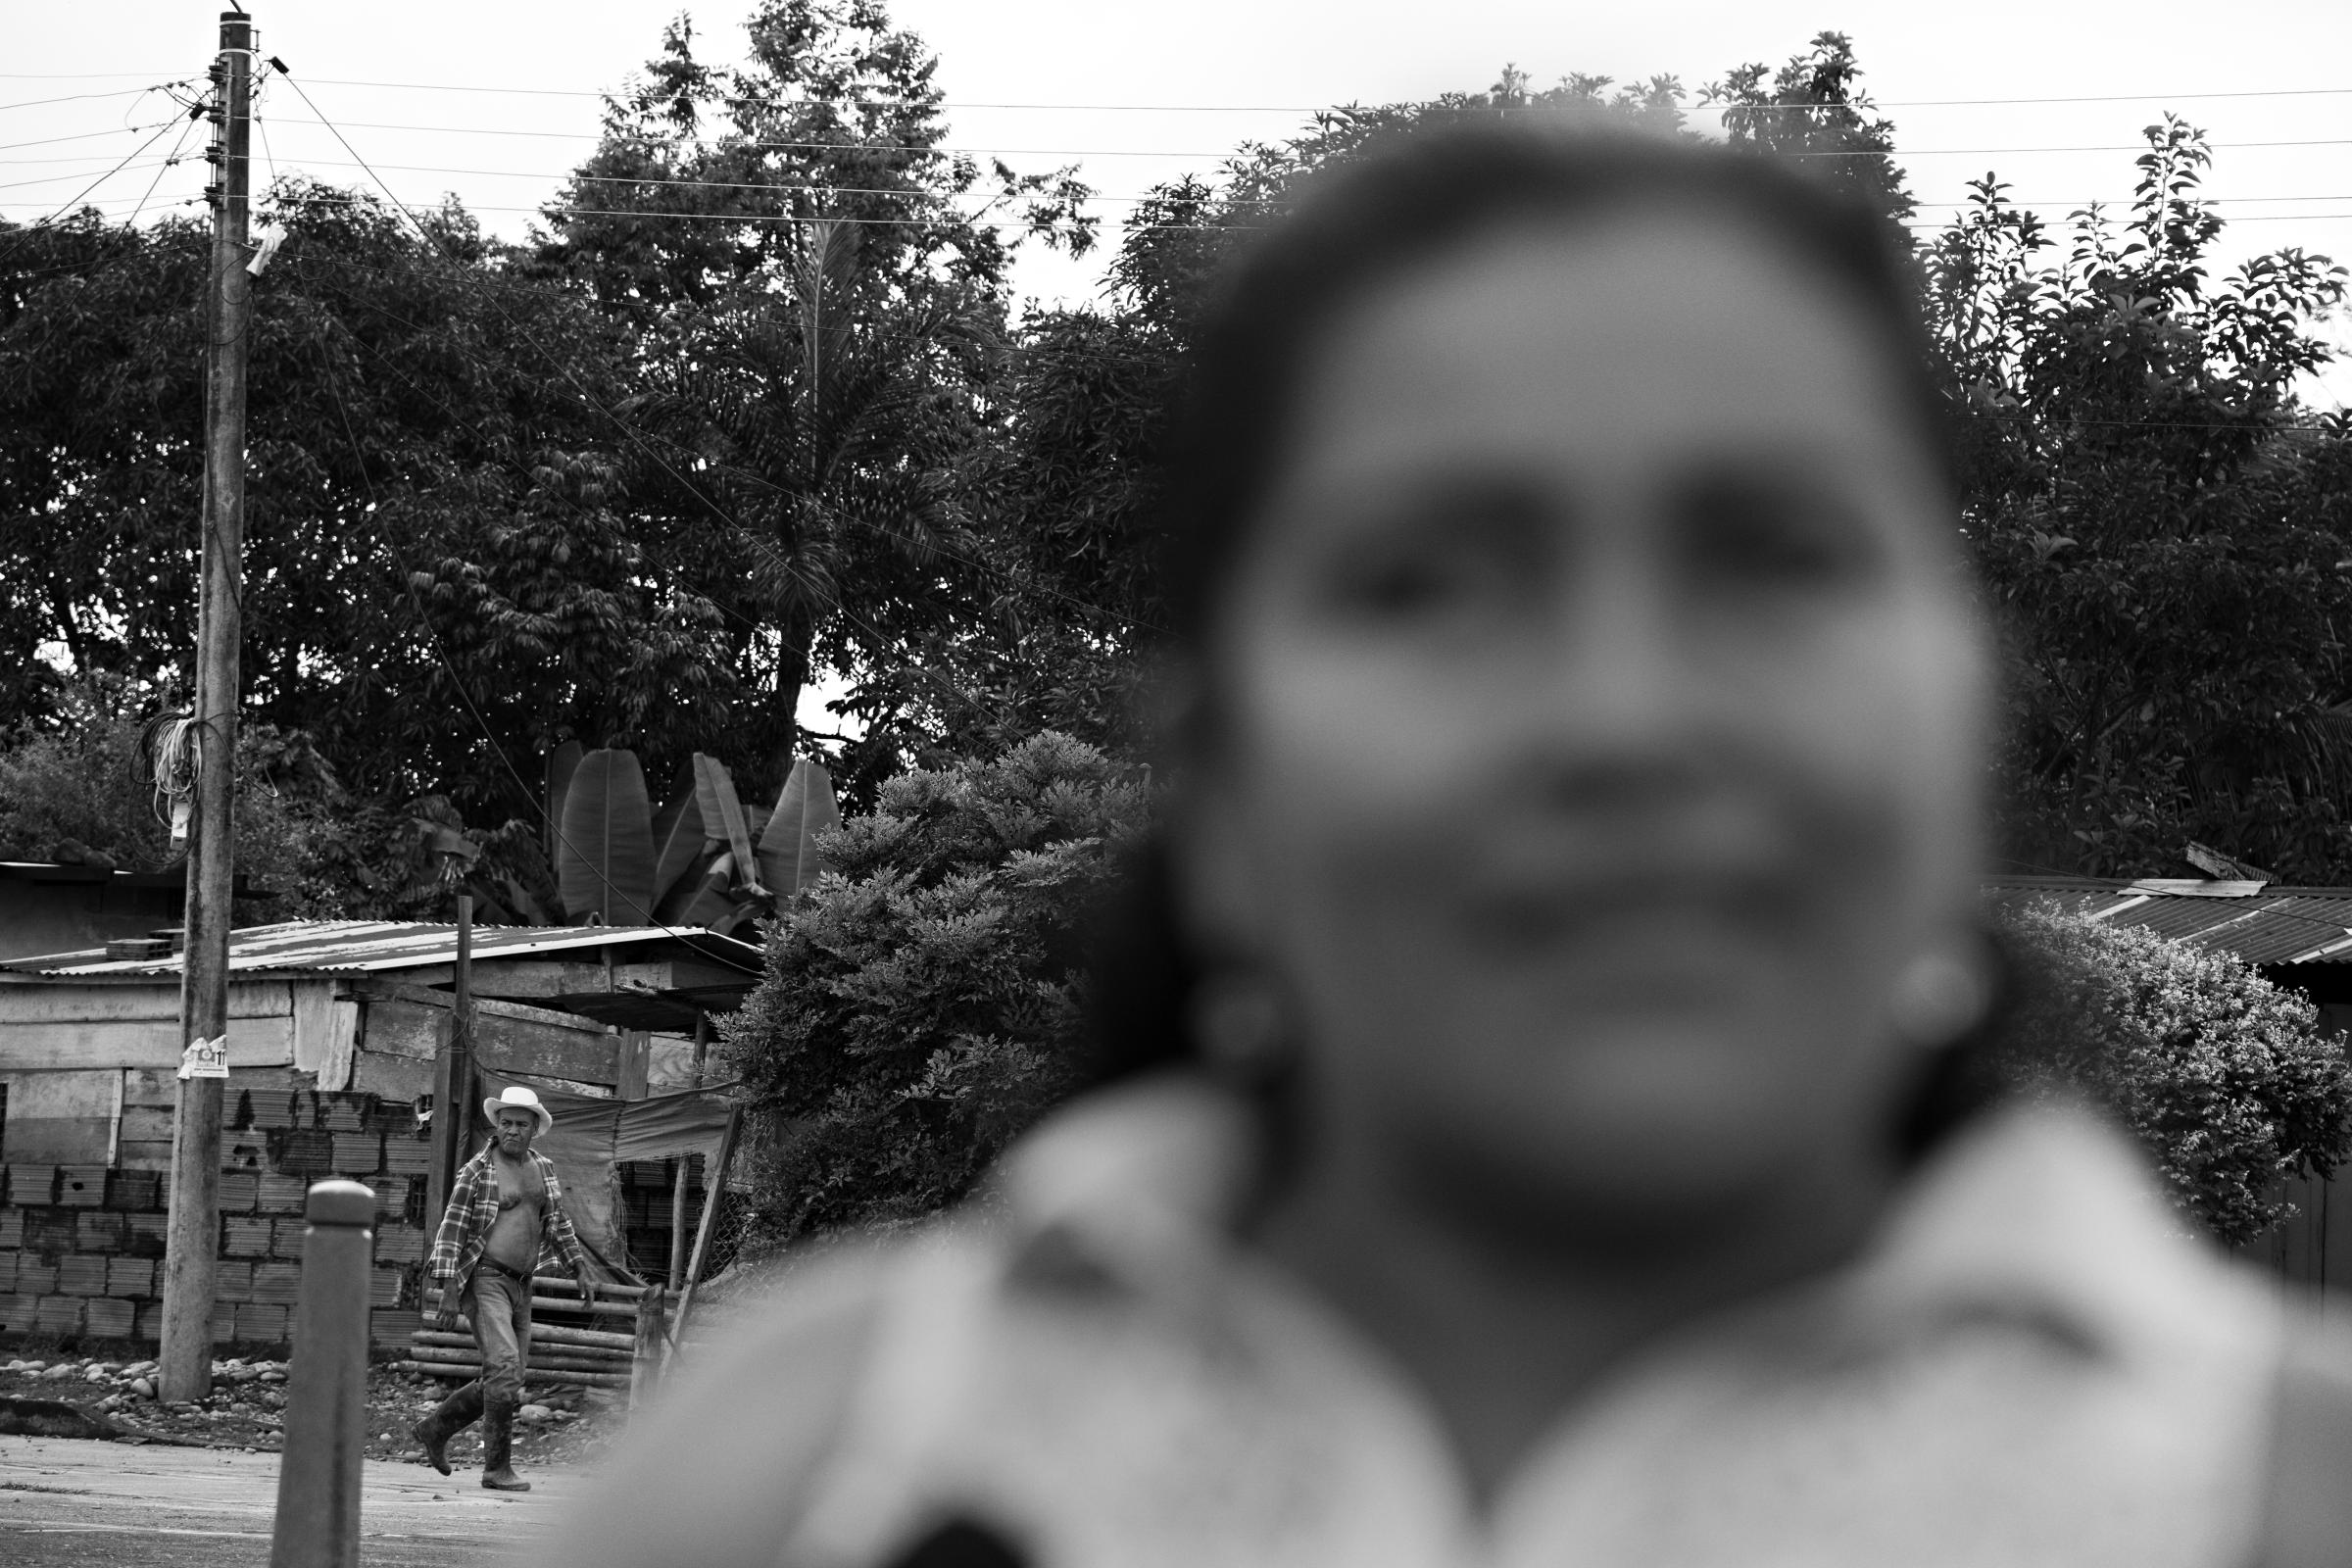 50 years of FARC - Nancy Castaño, resident of La Julia, Meta,...